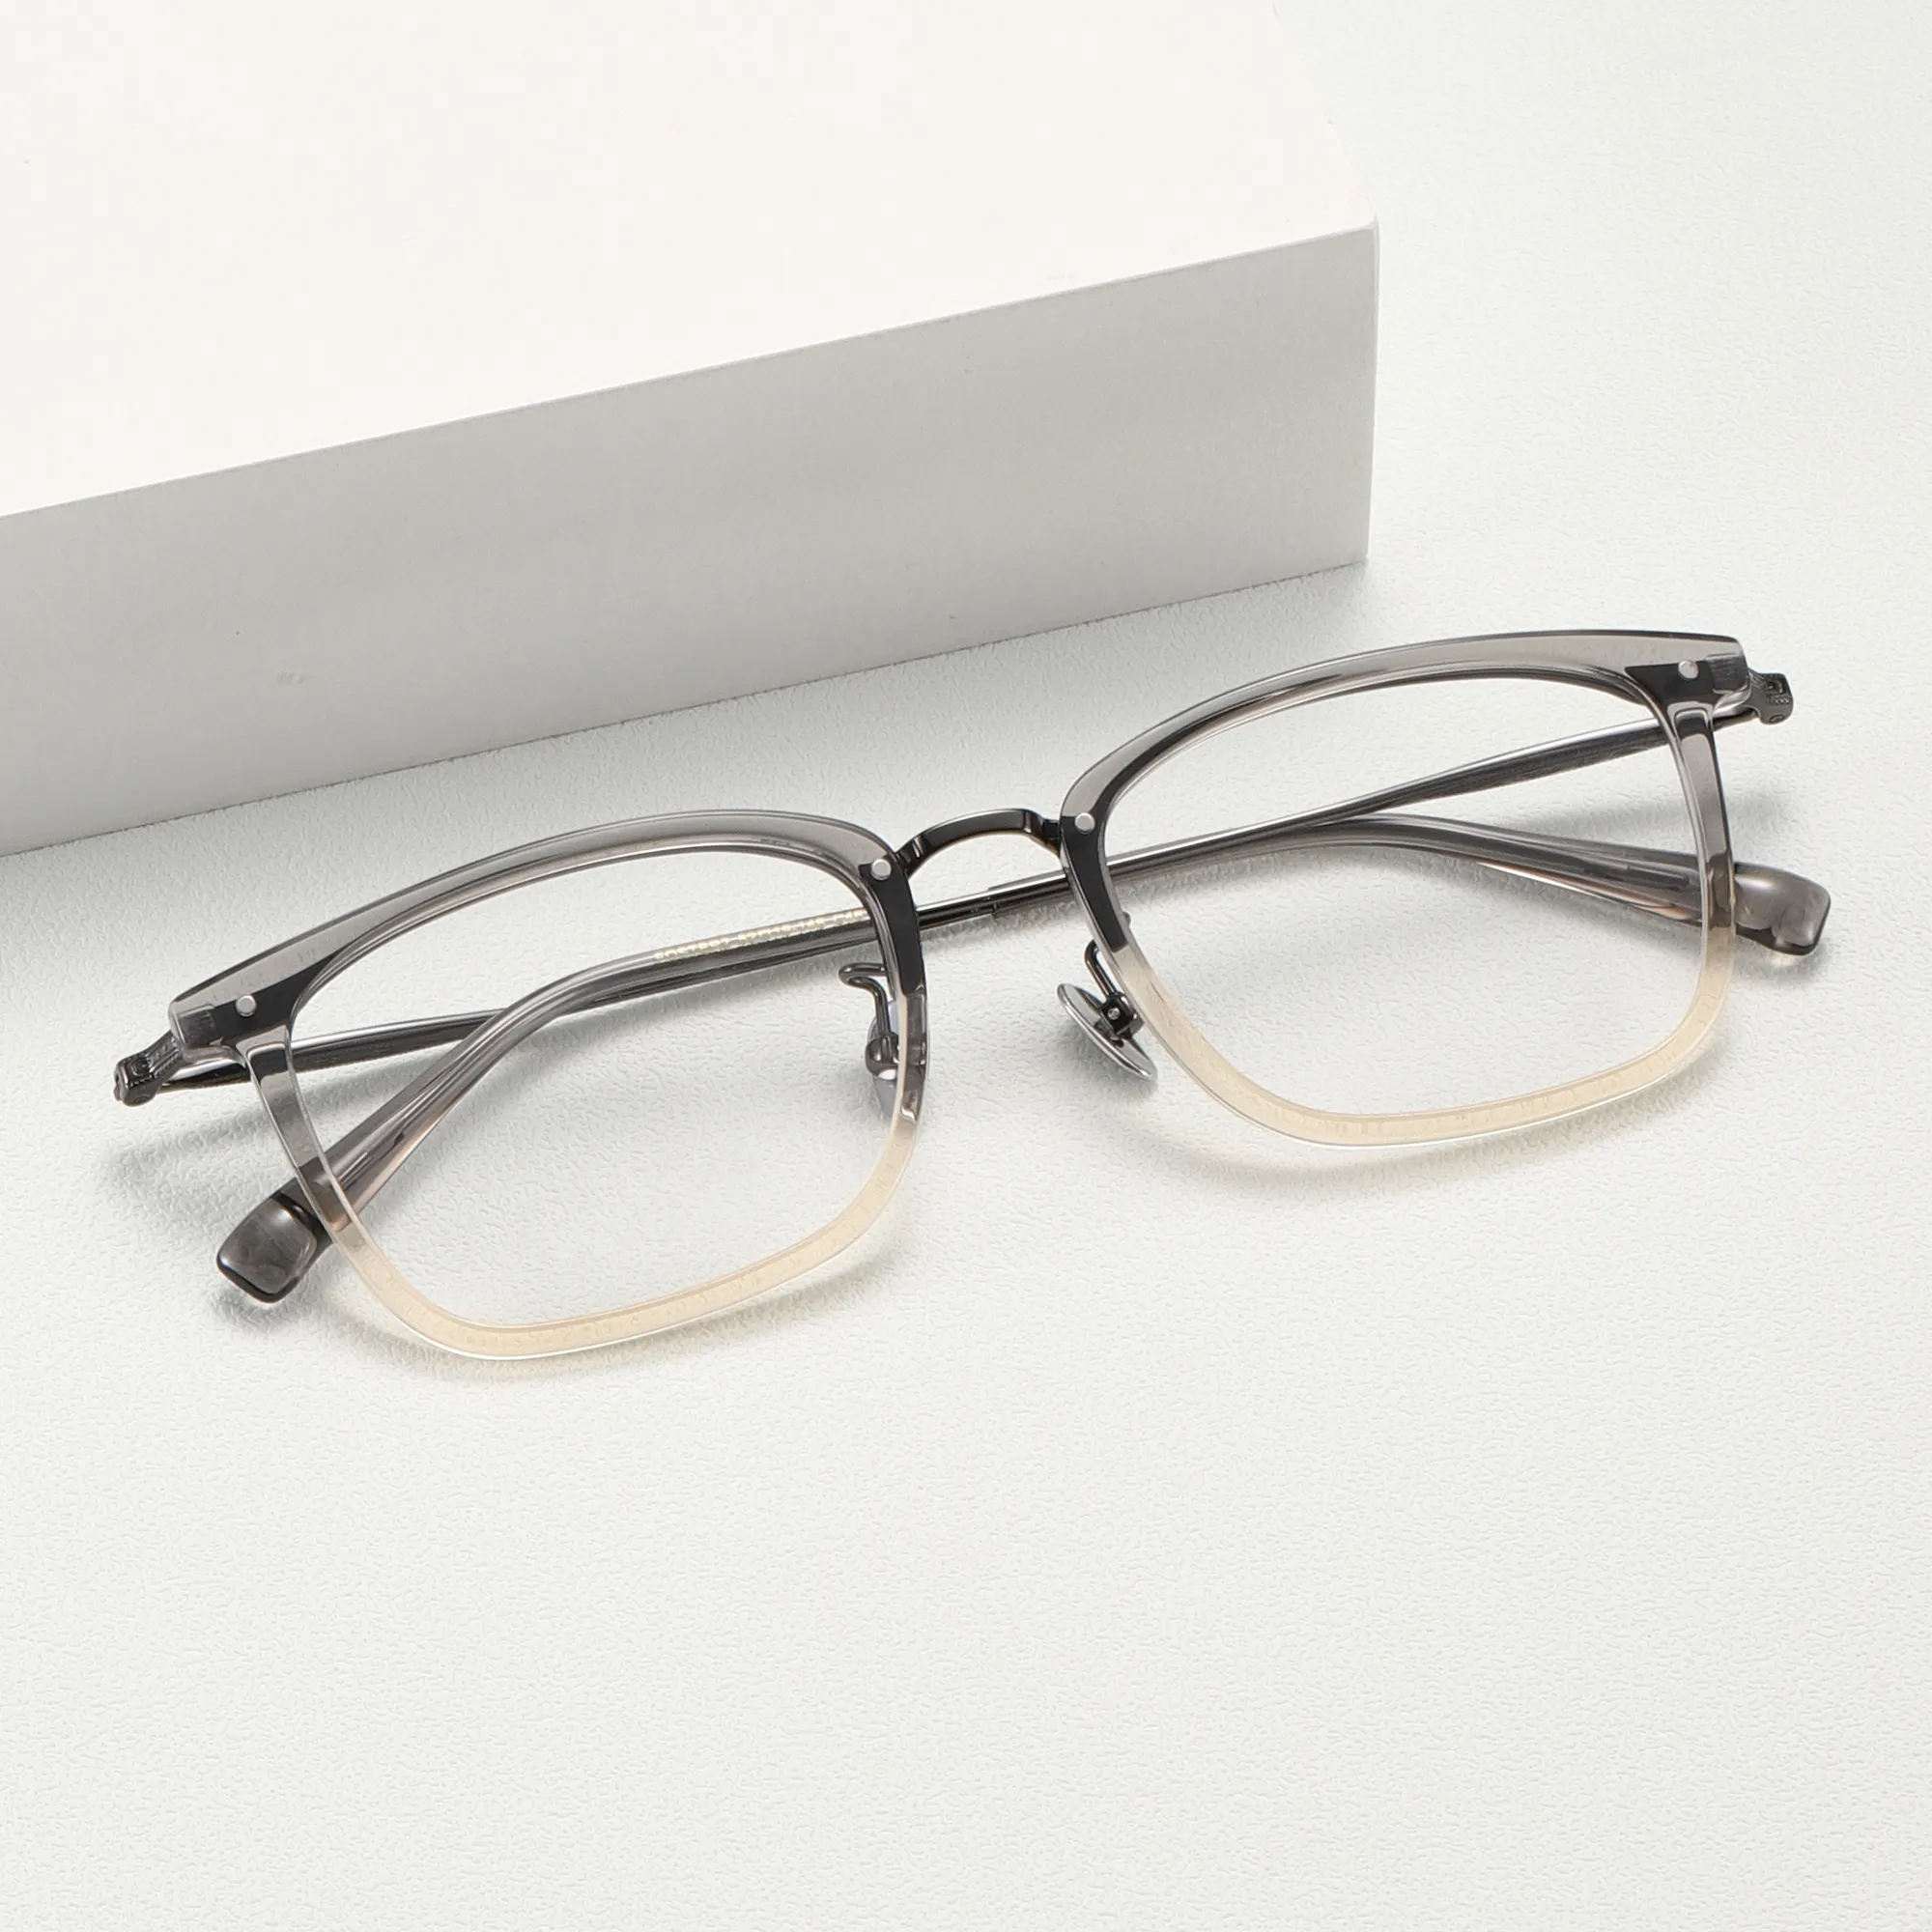 Benyi 심천 제조업체 고급 티타늄 광학 프레임 수제 안경 독서 안경 남녀 공용 디자인